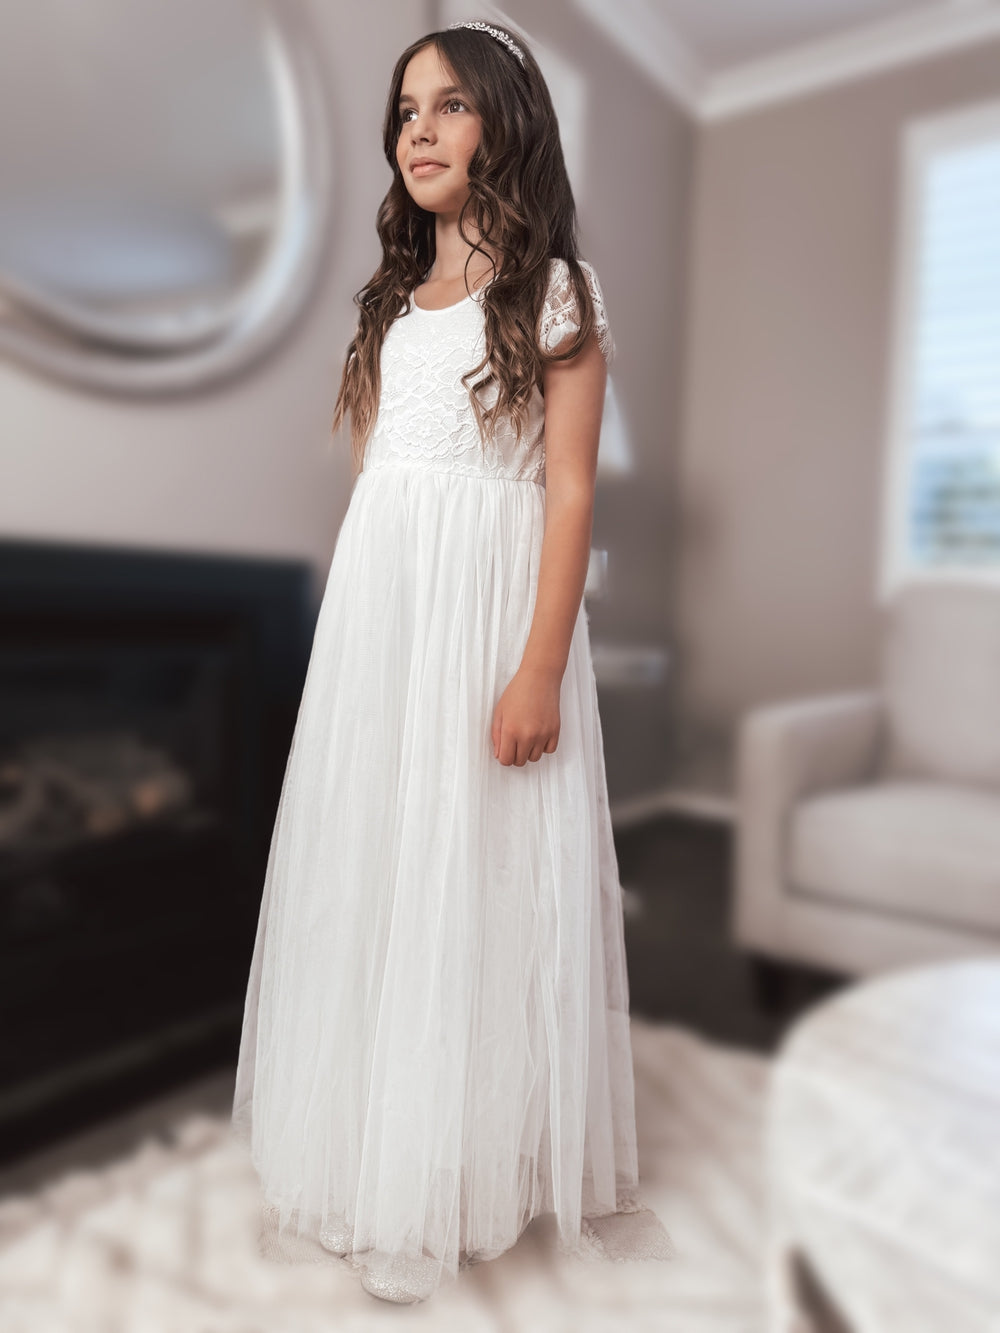 Celeste Girls White Lace & Tulle Dress - Girls White DressesWhite first communion dress - full length dress